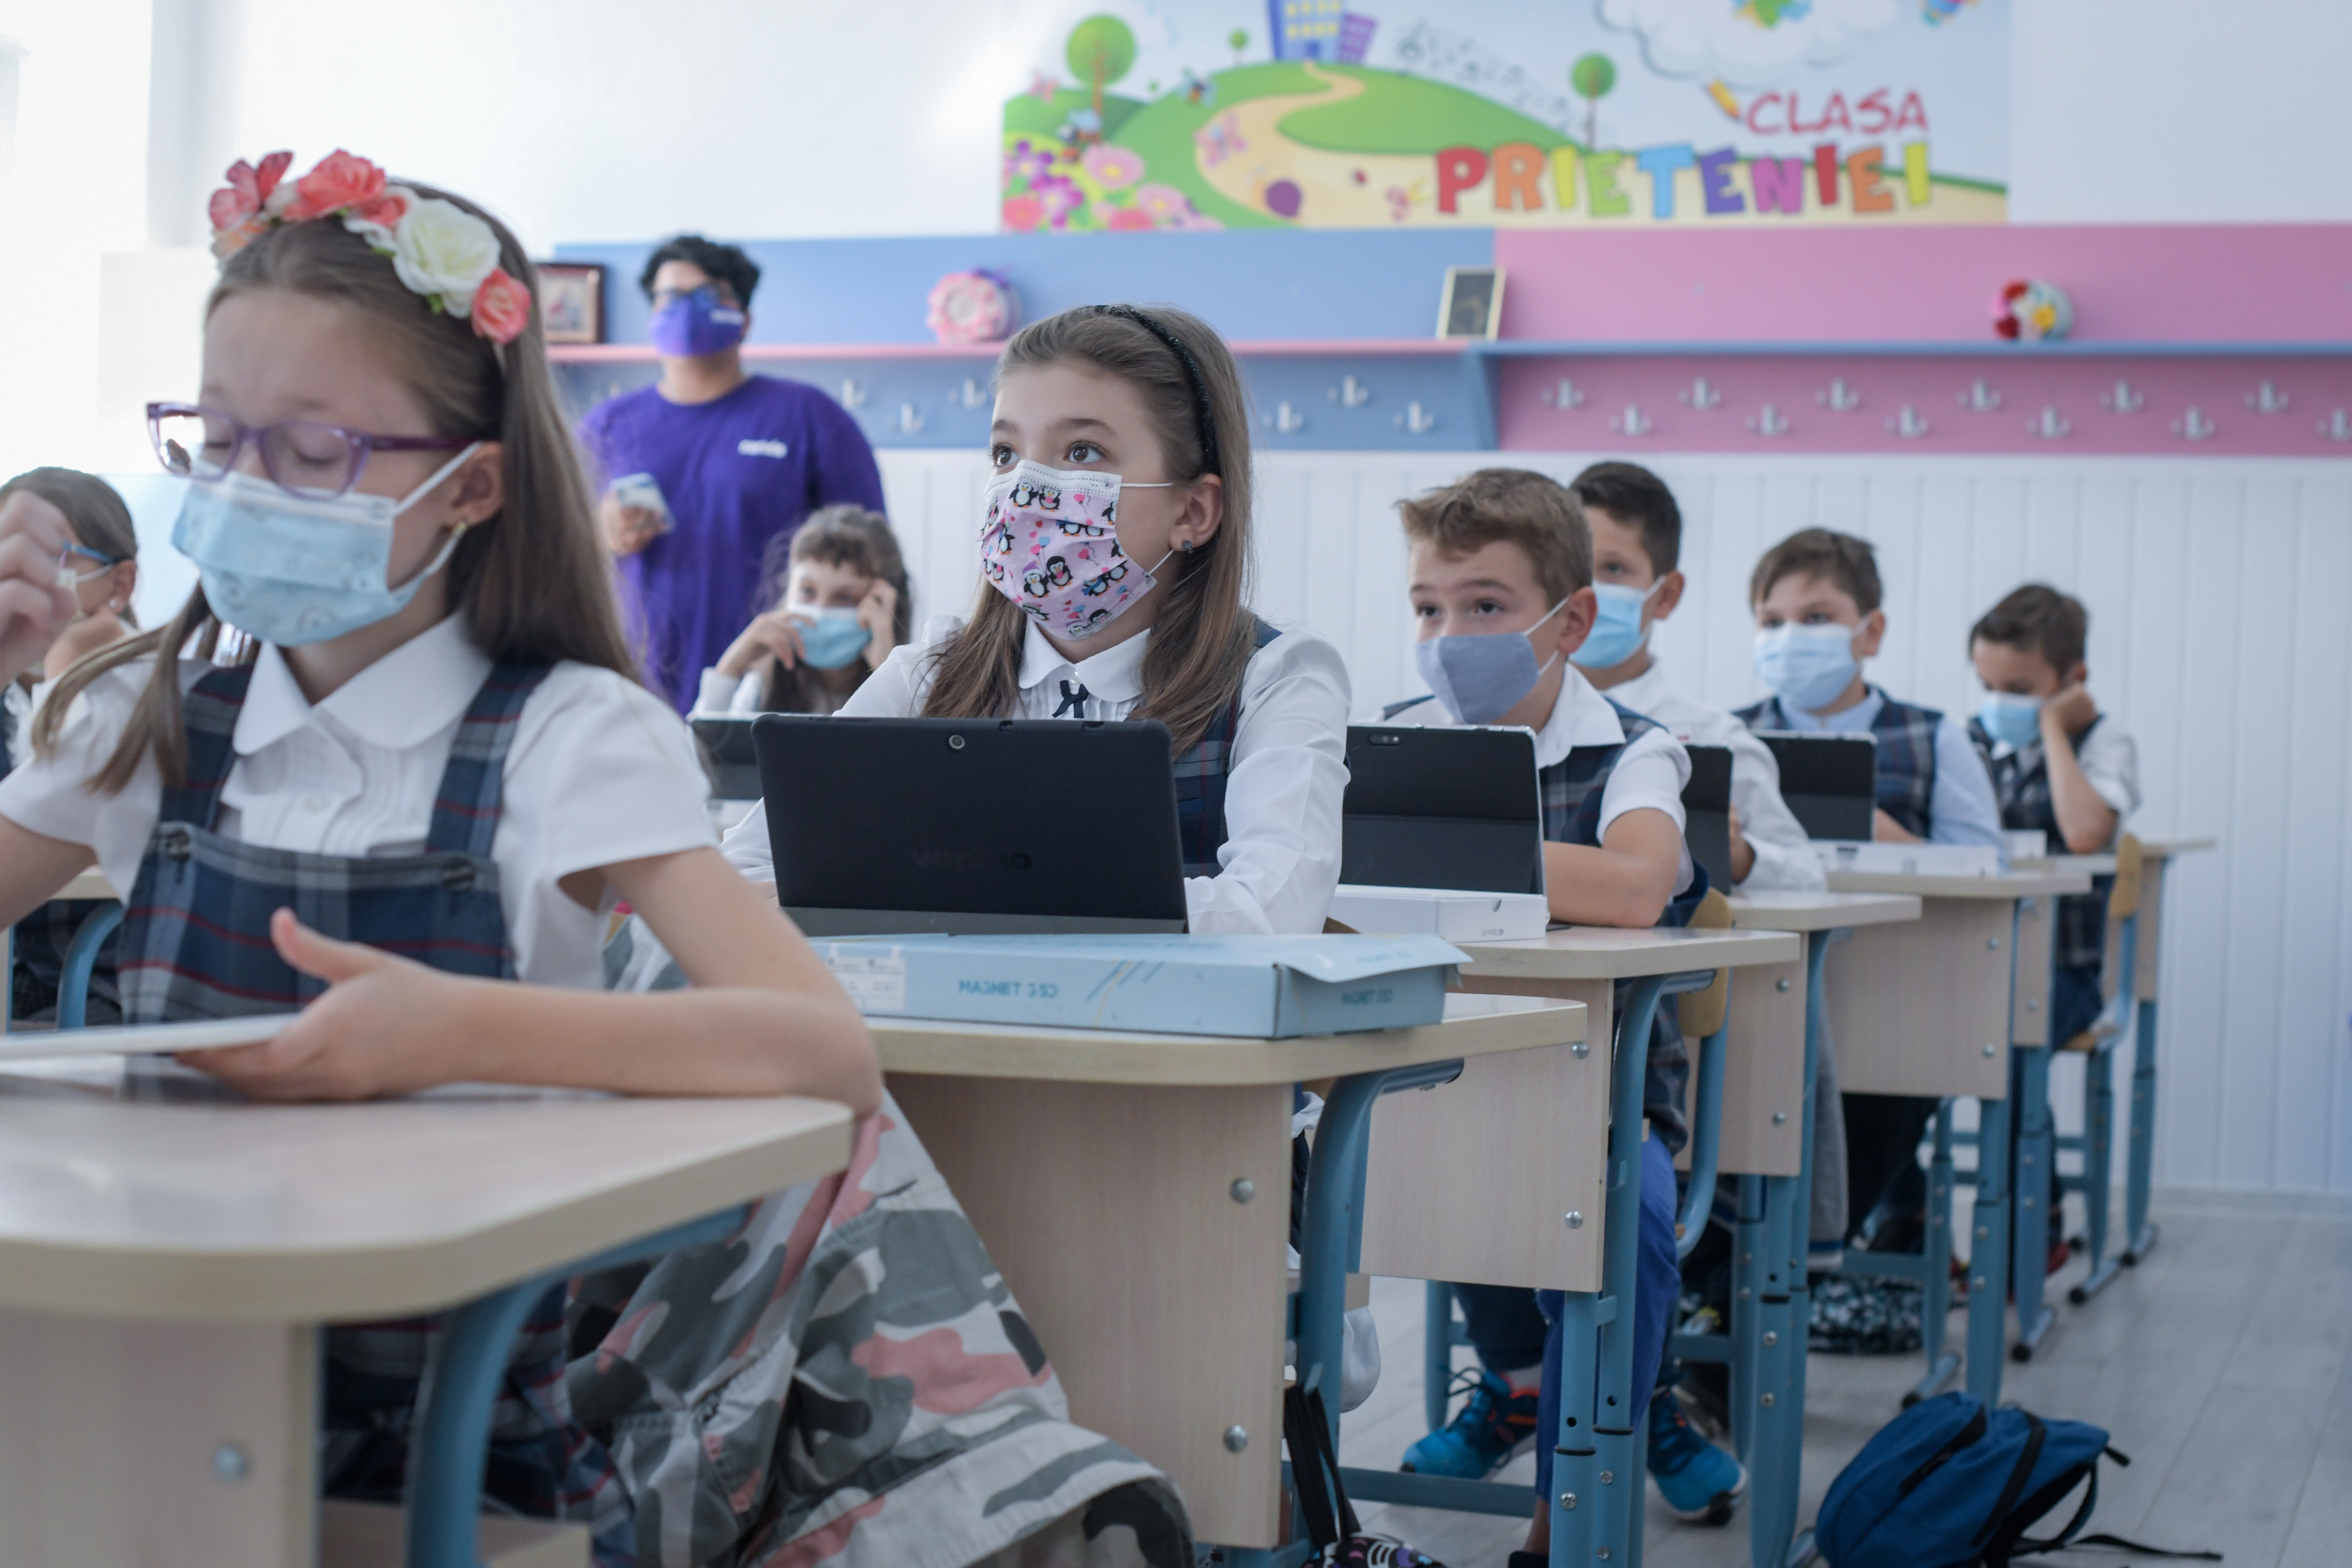 Proiect european de peste 22 mil. lei pentru dotarea cu echipamente IT a şcolilor din municipiul Oradea